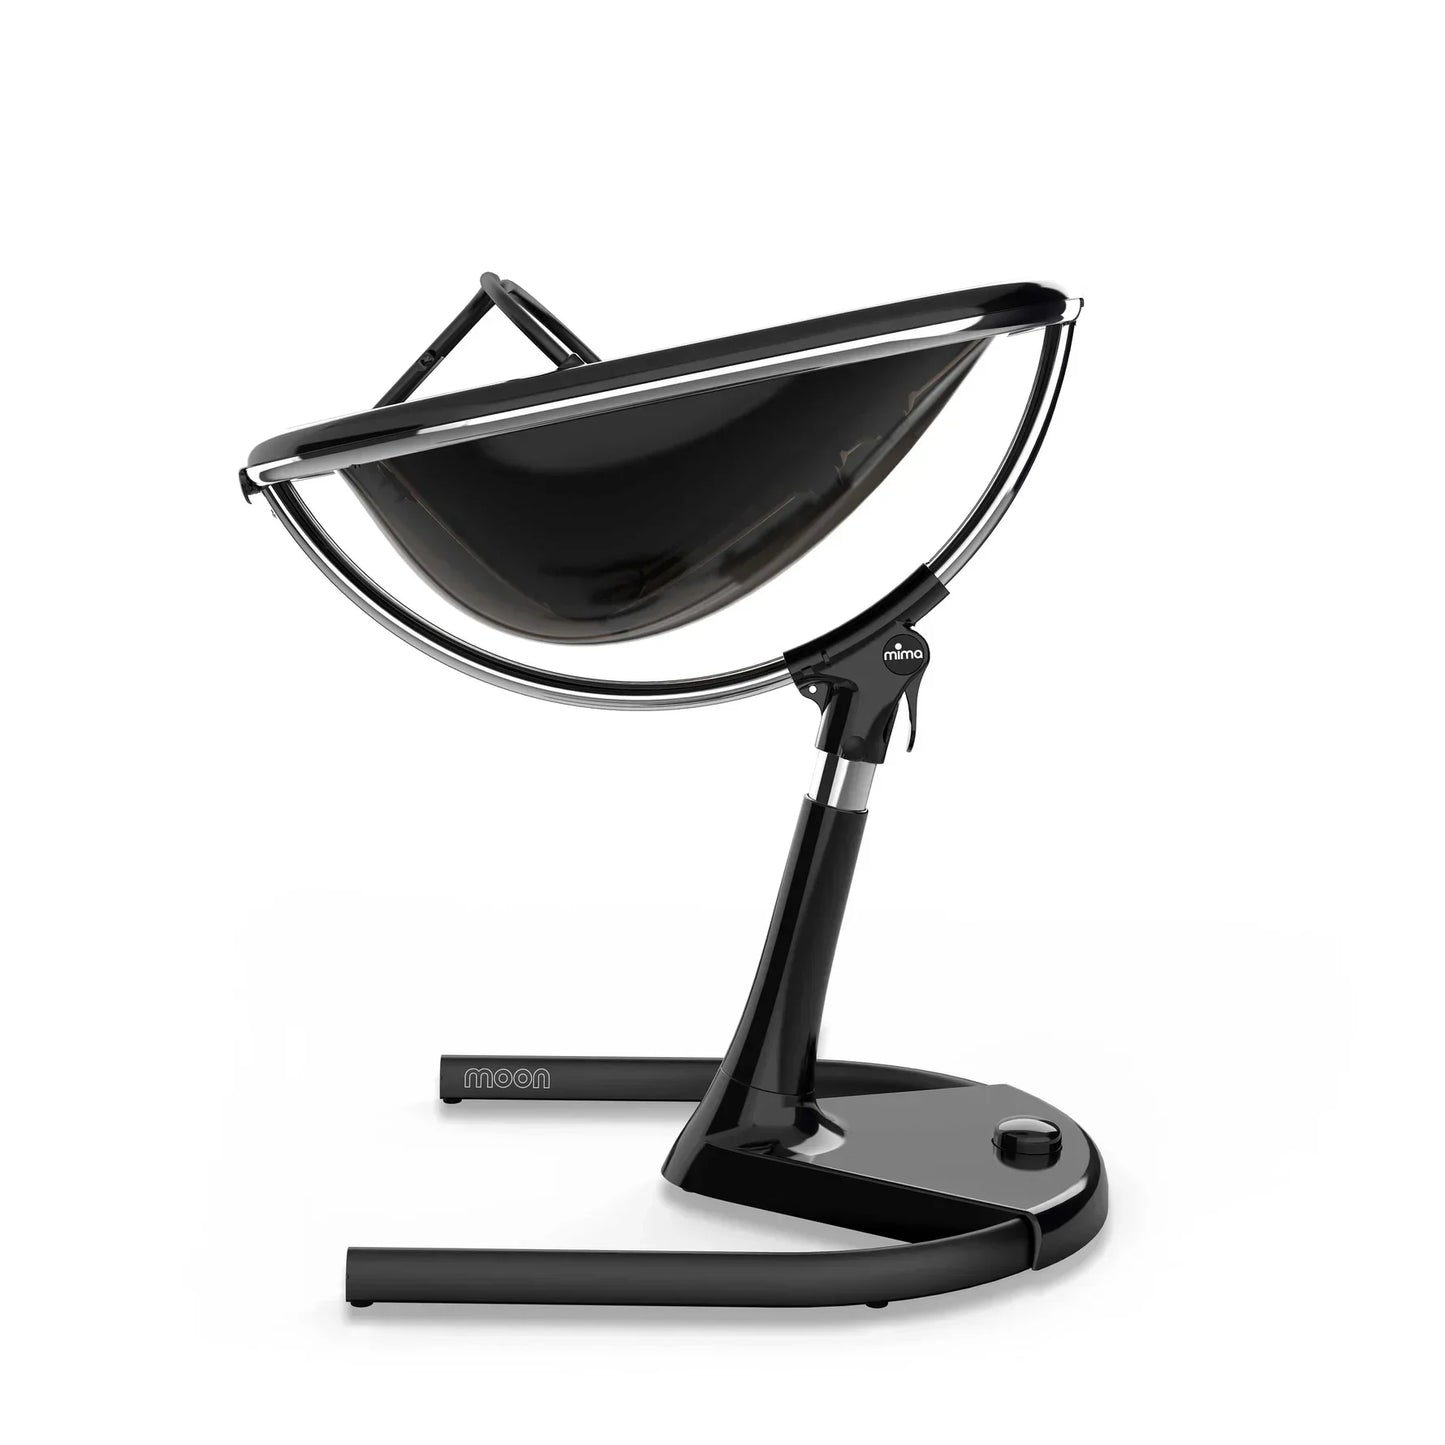 Mima Moon 2G High Chair - Black/Champagne